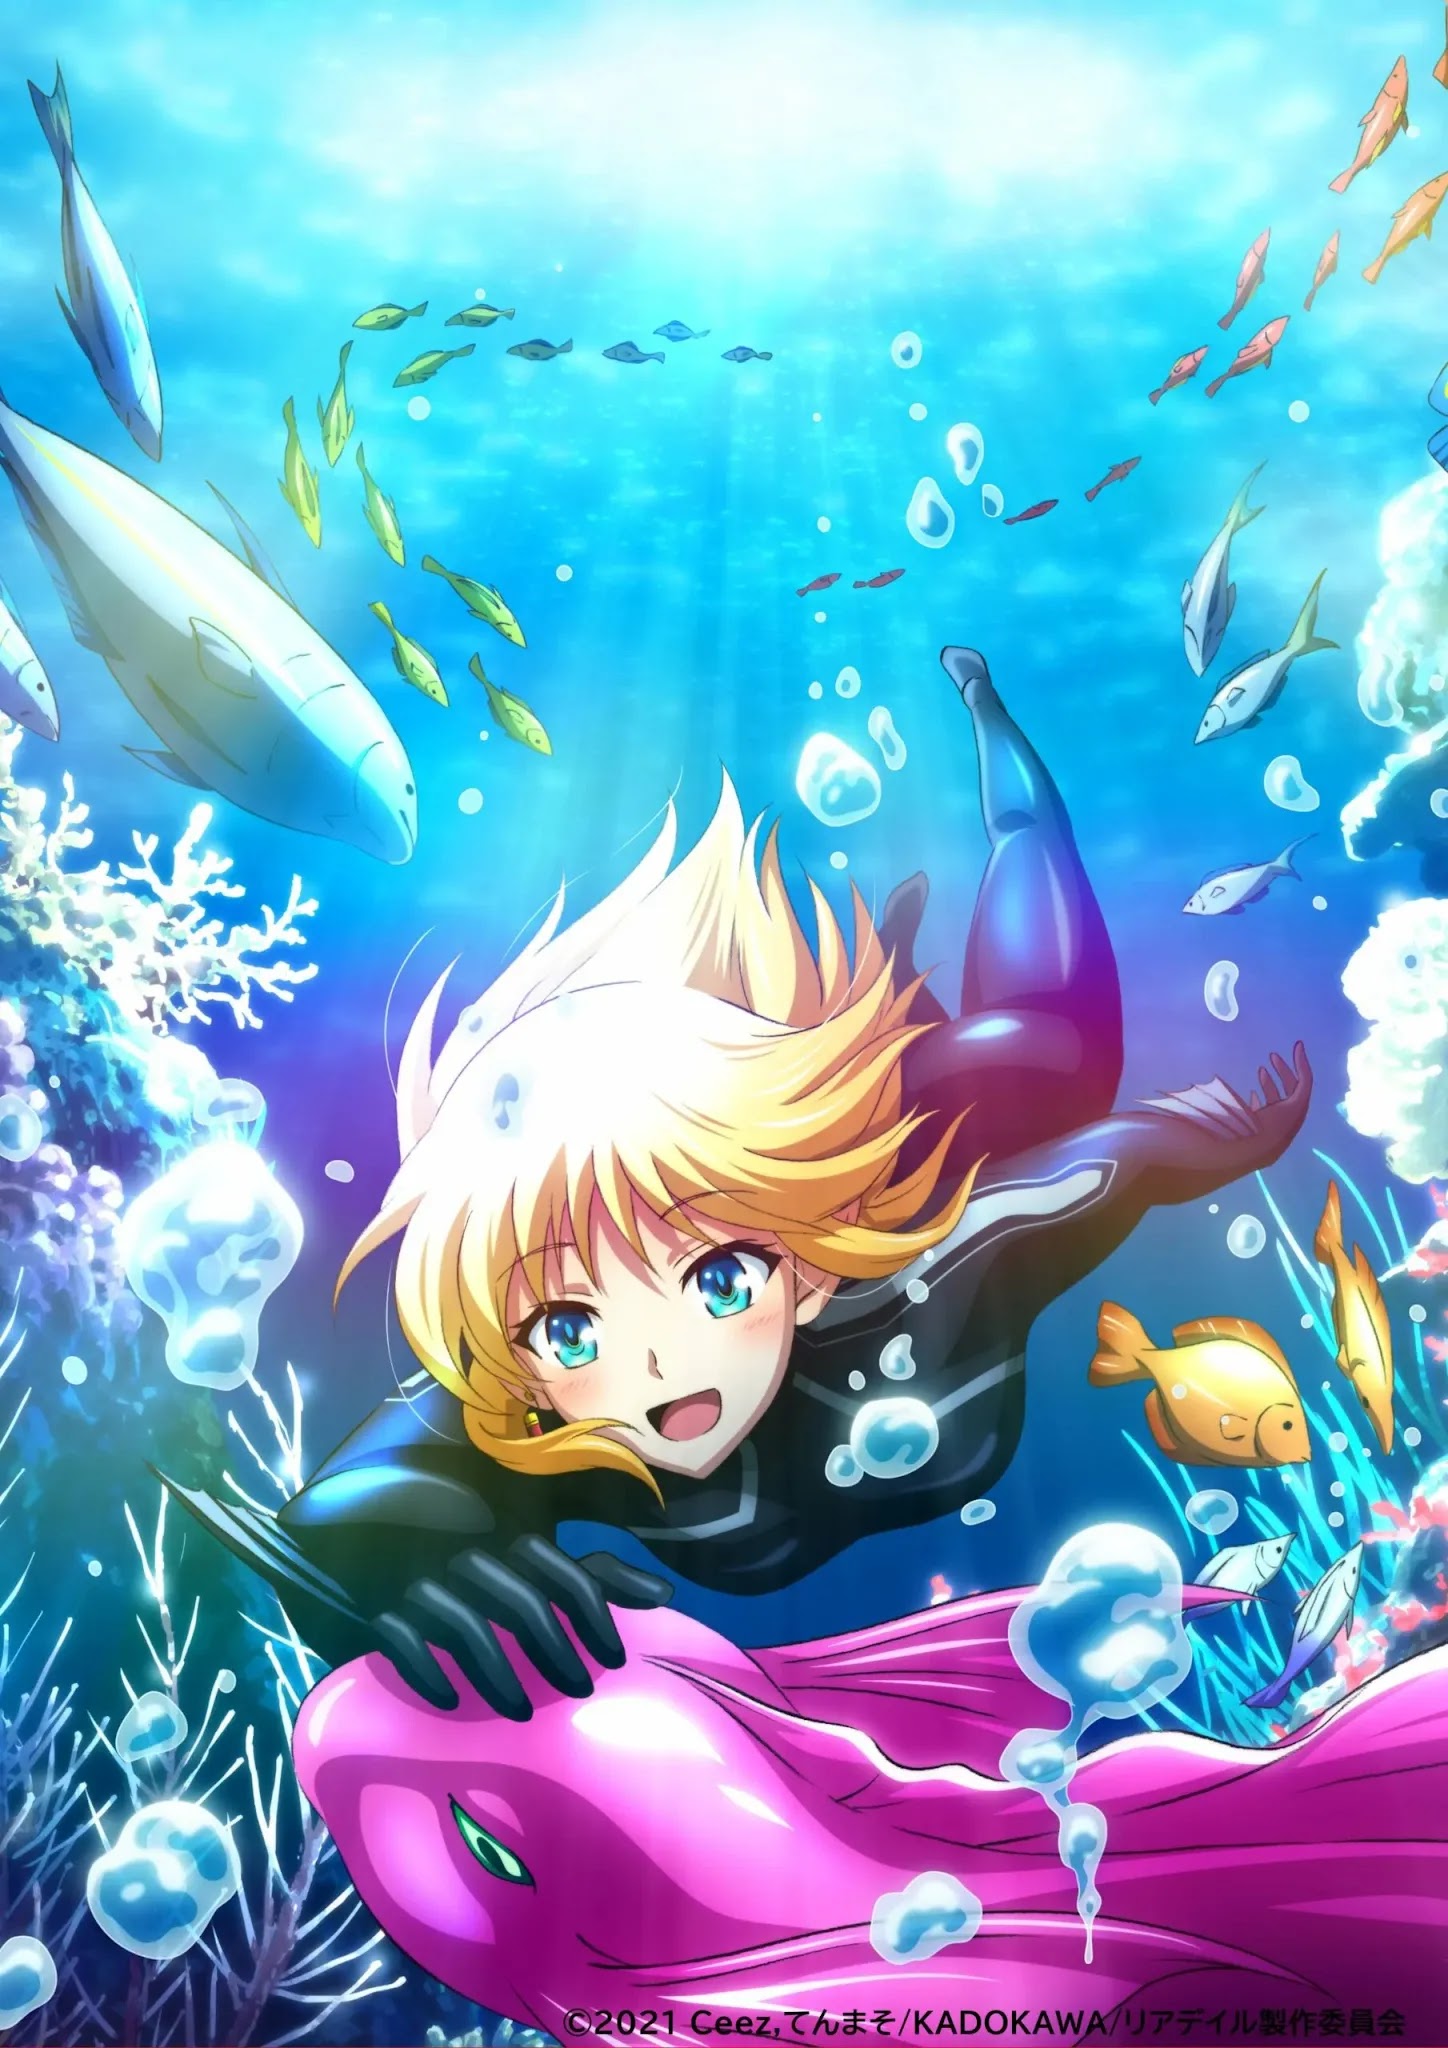 O Anime Leadale no Daichi nite revelou sua terceira Imagem Promocional